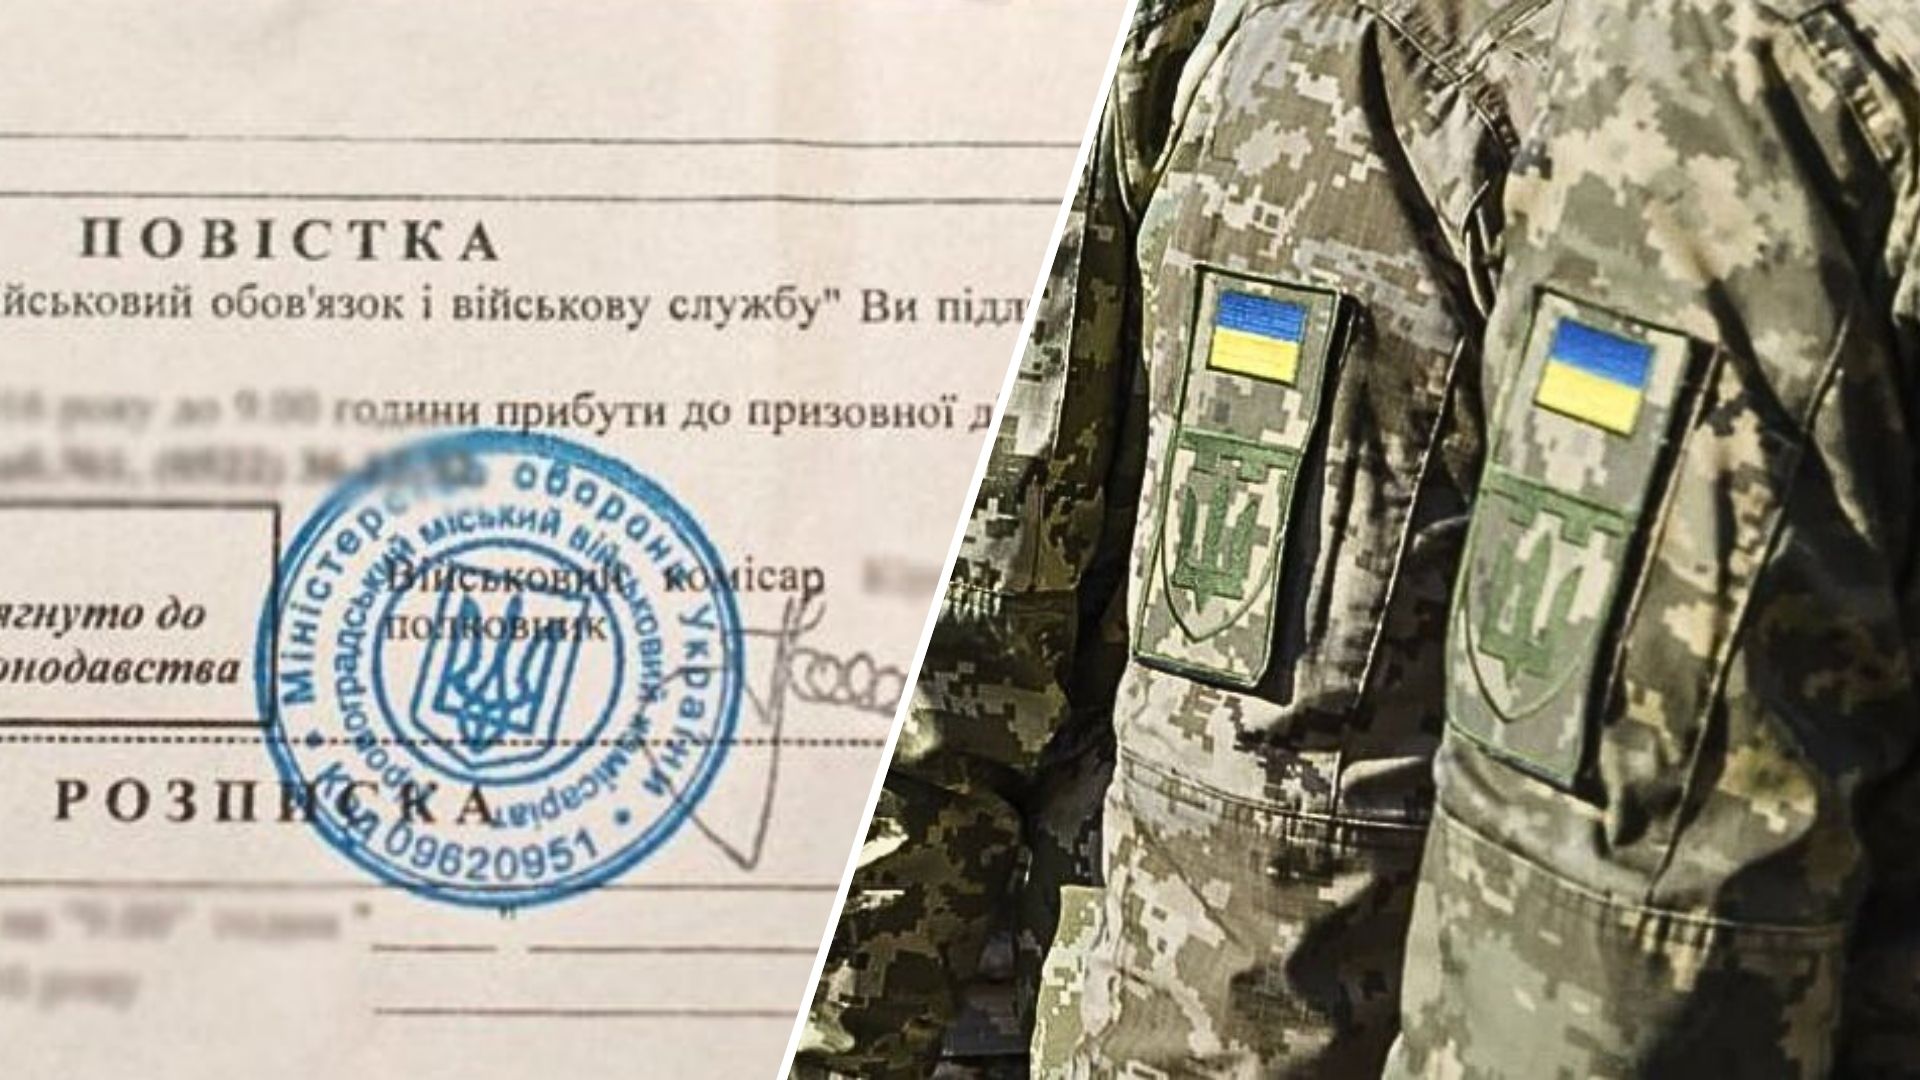 Міністерство оборони України надало роз'яснення щодо нового мобілізаційного законопроєкту №10449, який передбачає низку змін у системі мобілізації та військової підготовки громадян.